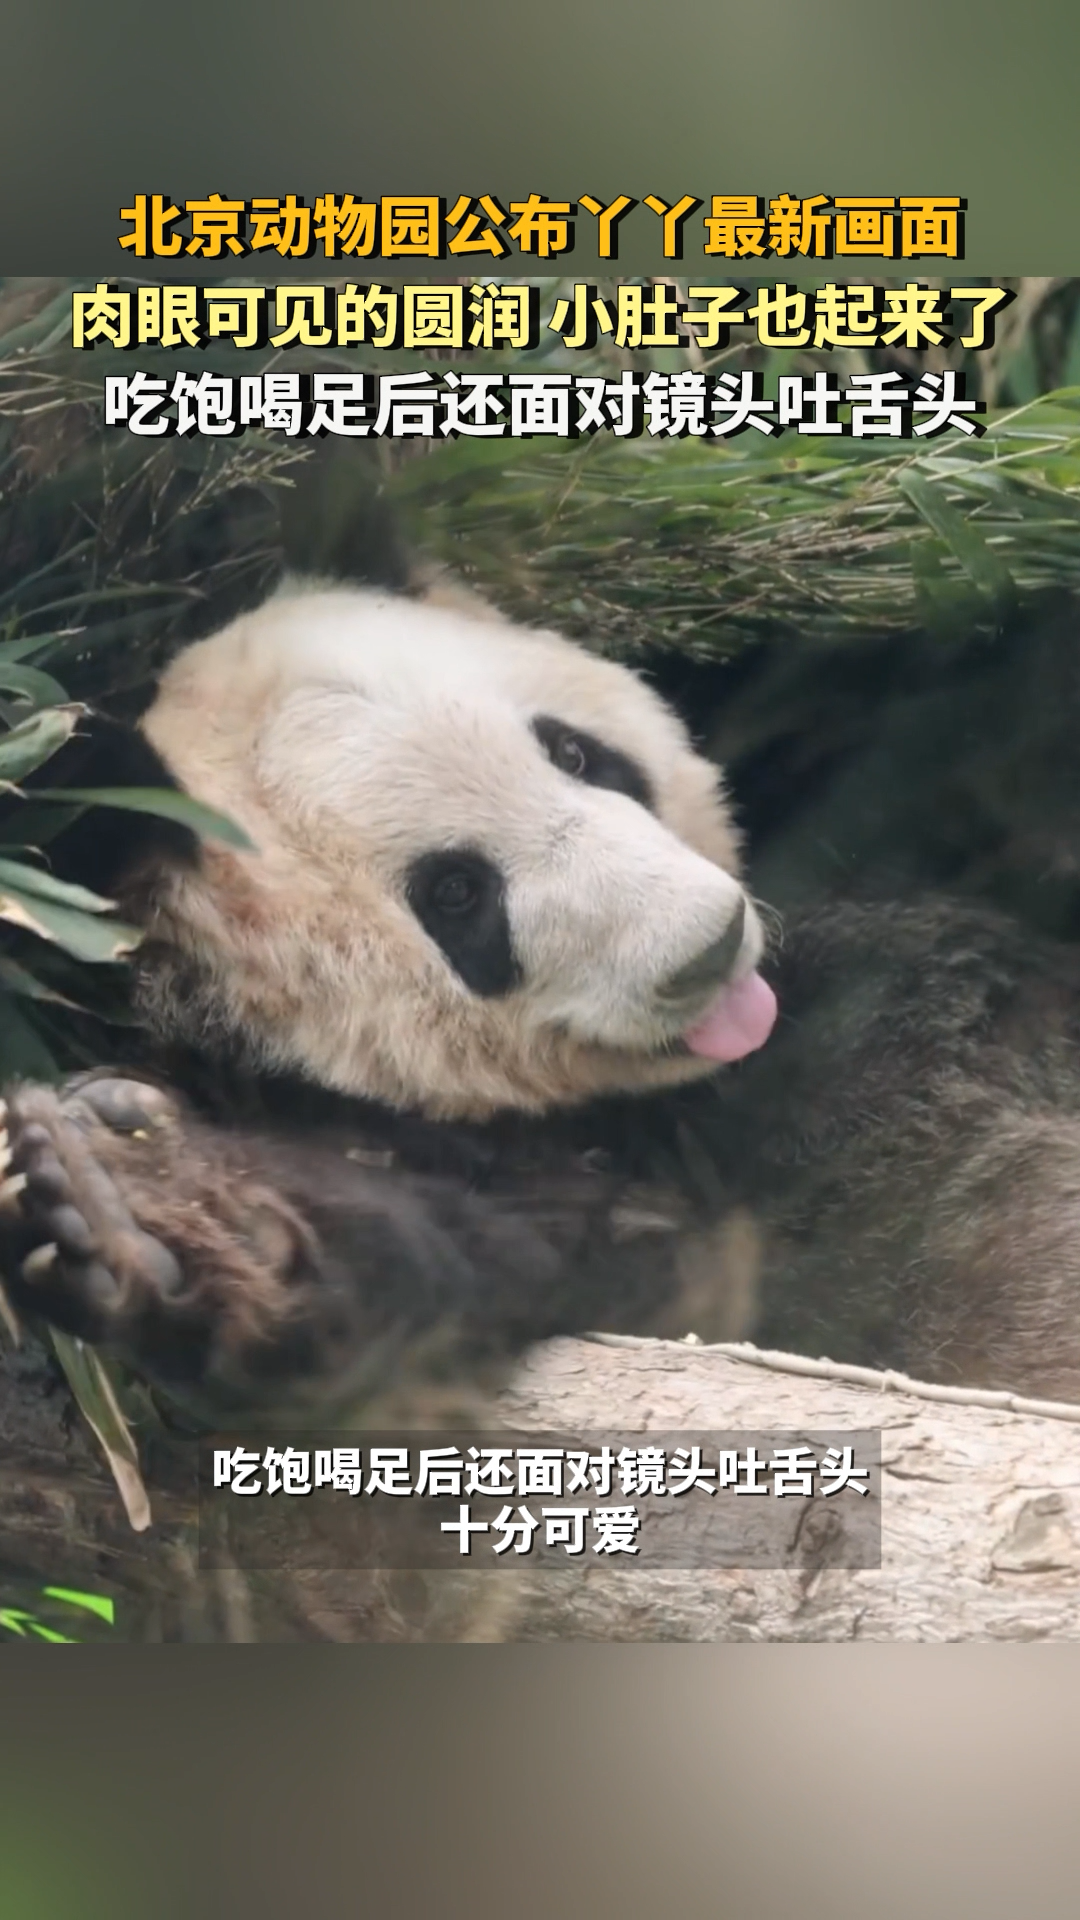 北京动物园公布丫丫最新画面,肉眼可见的圆润肚子也起来了